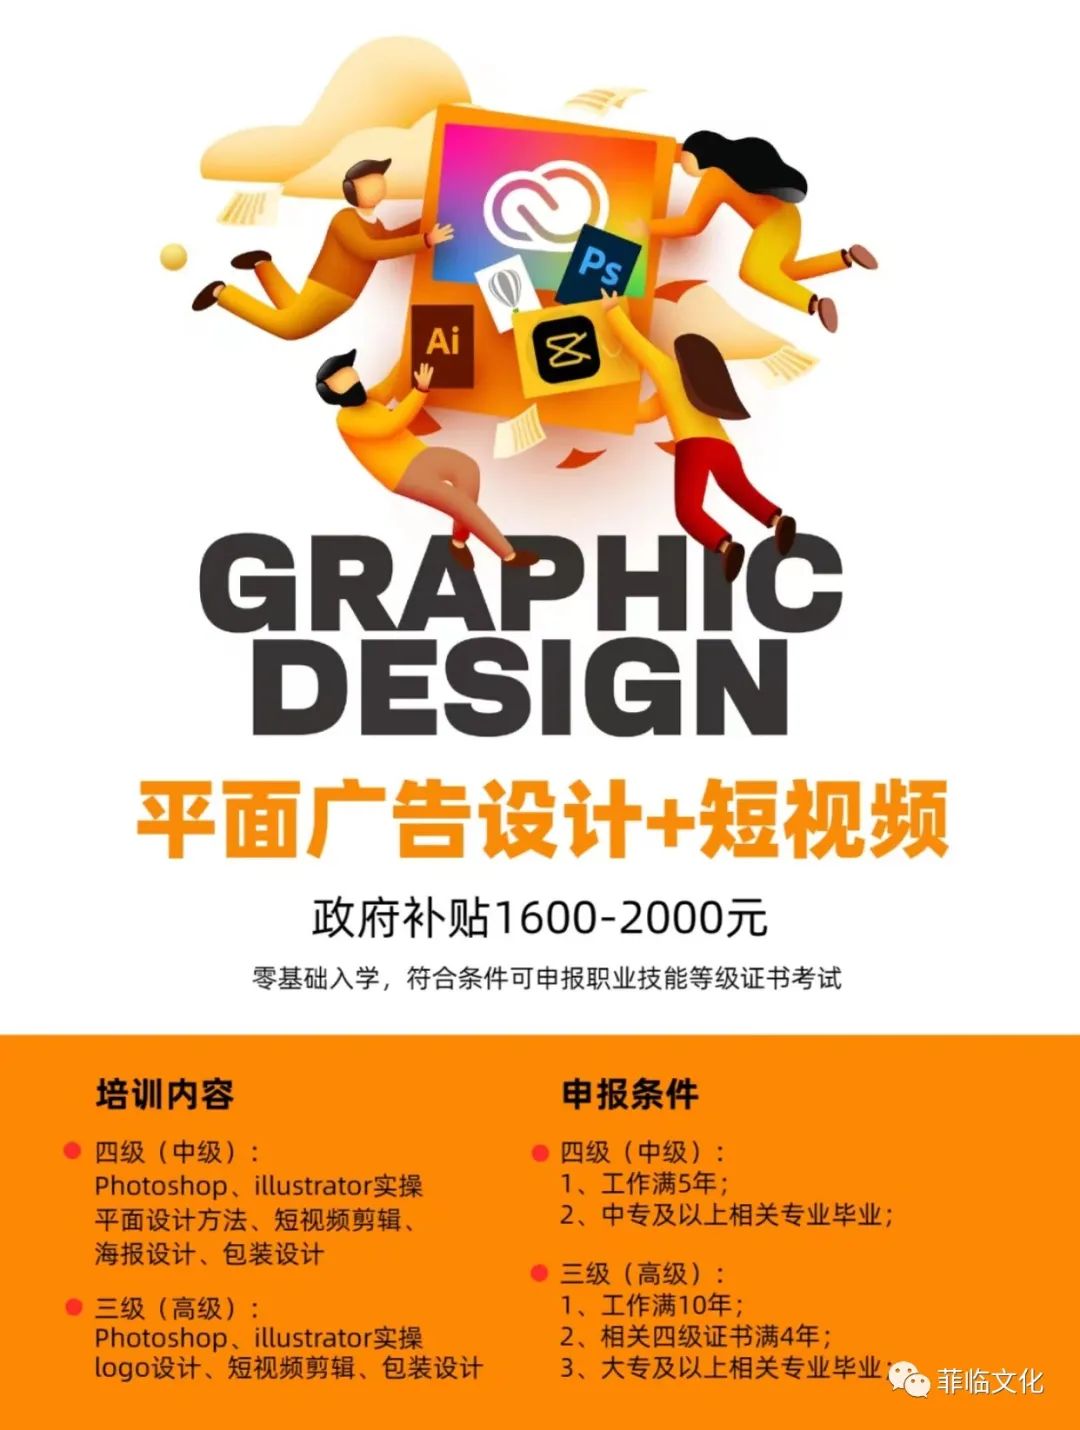 上海包装设计公司有几家_上海包装设计公司有多少家_上海包装设计公司都有哪些